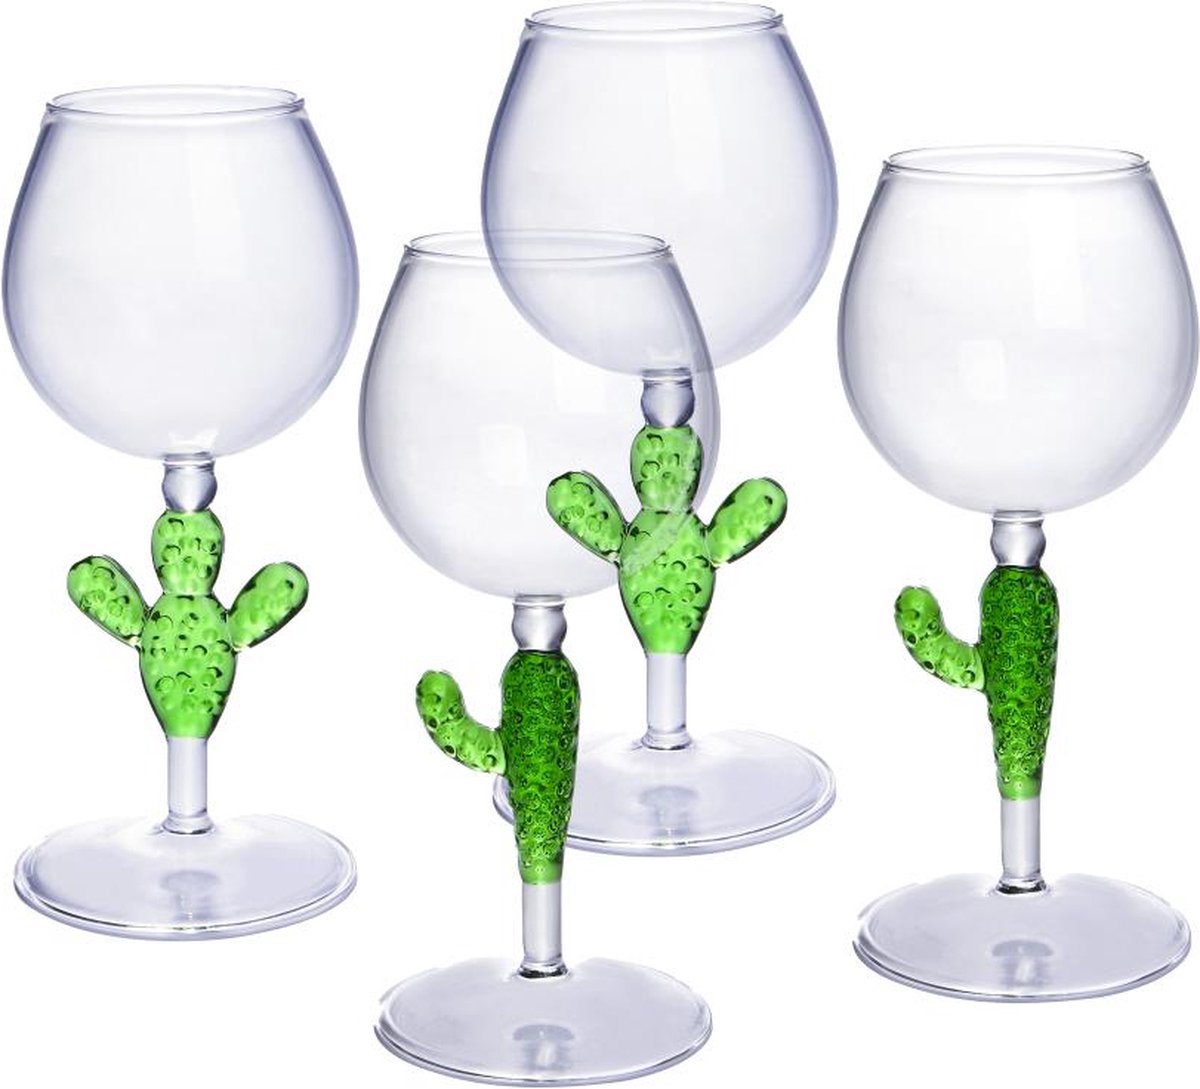 OZAIA Set van 4 wijnglazen met cactusvoet - Transparant en groen - Ø8,5 x H19,5 cm - GELLIF L 8.6 cm x H 19.5 cm x D 8.6 cm